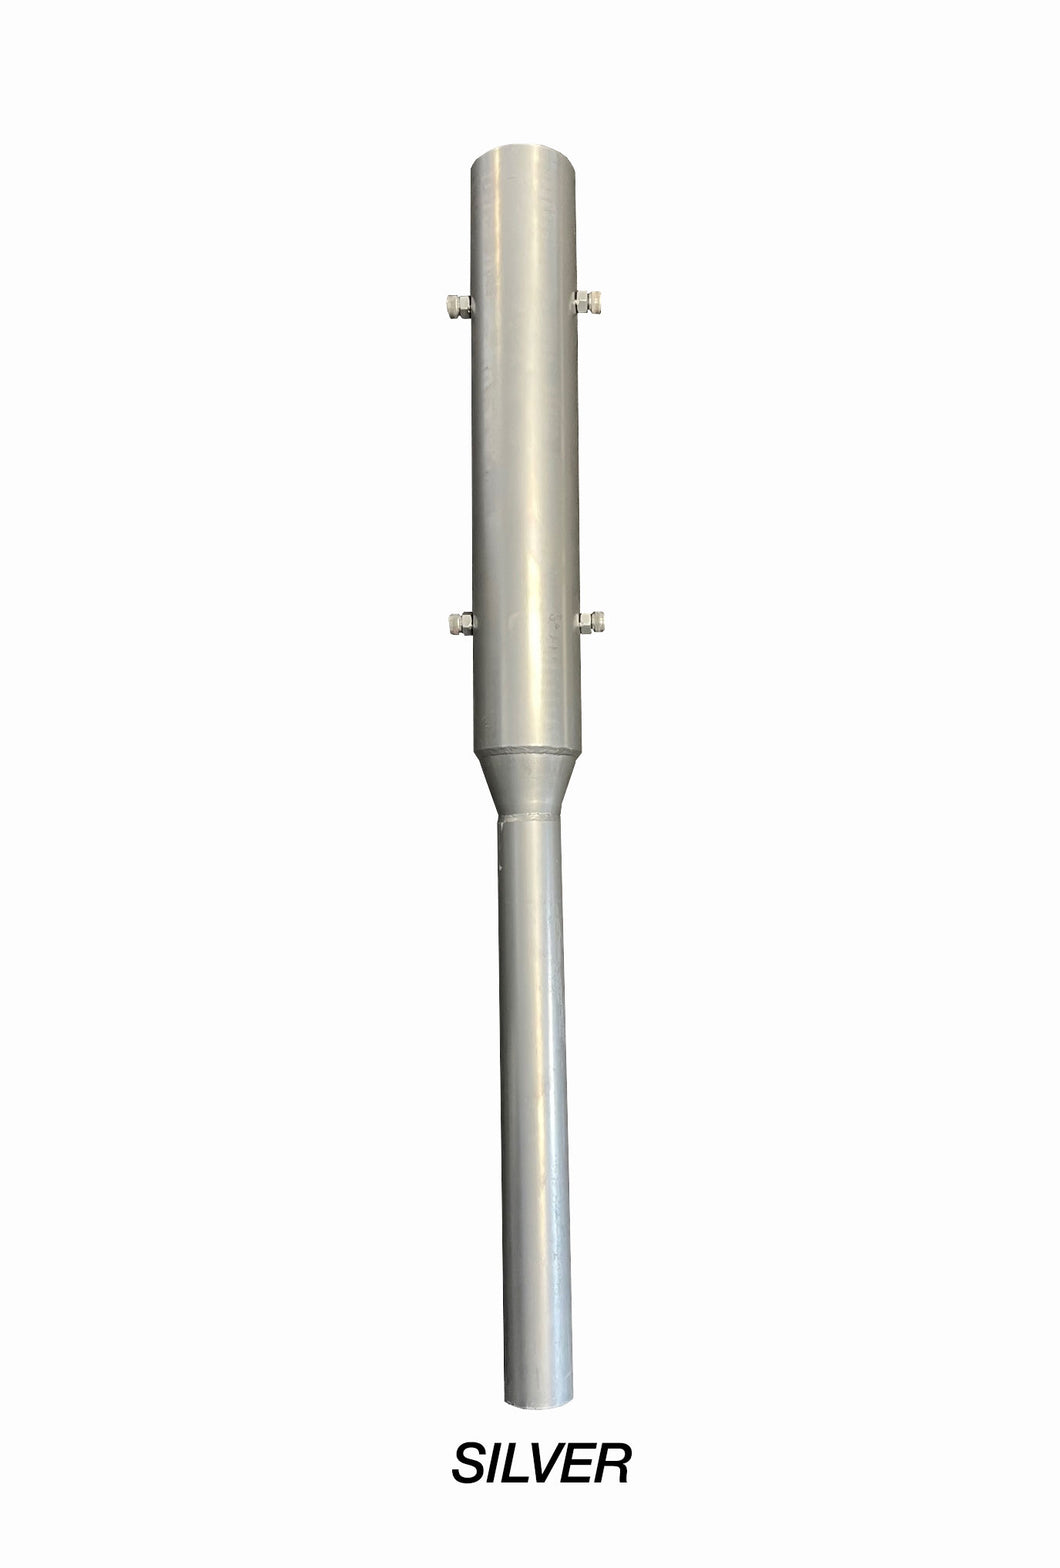 Flagpole Sleeve Adapter